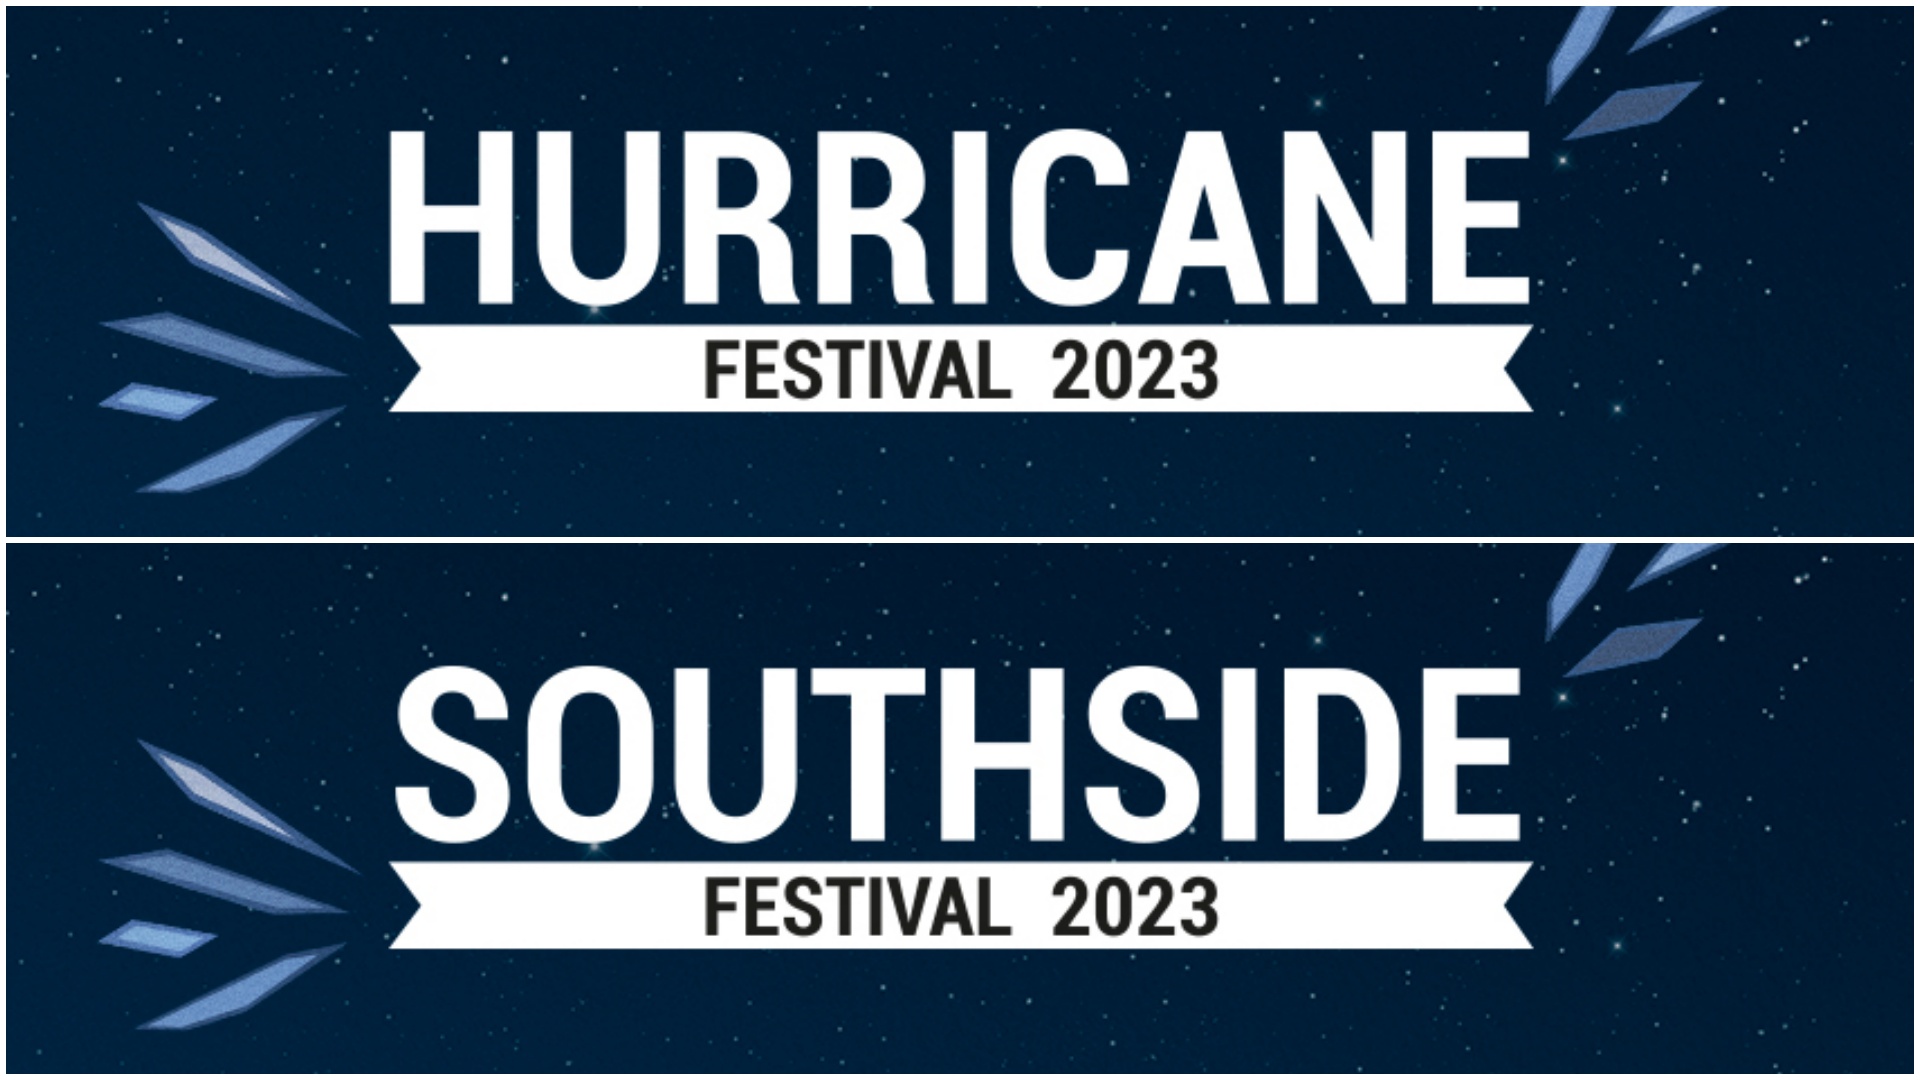 Hurricane Festival Southside Festival 2023